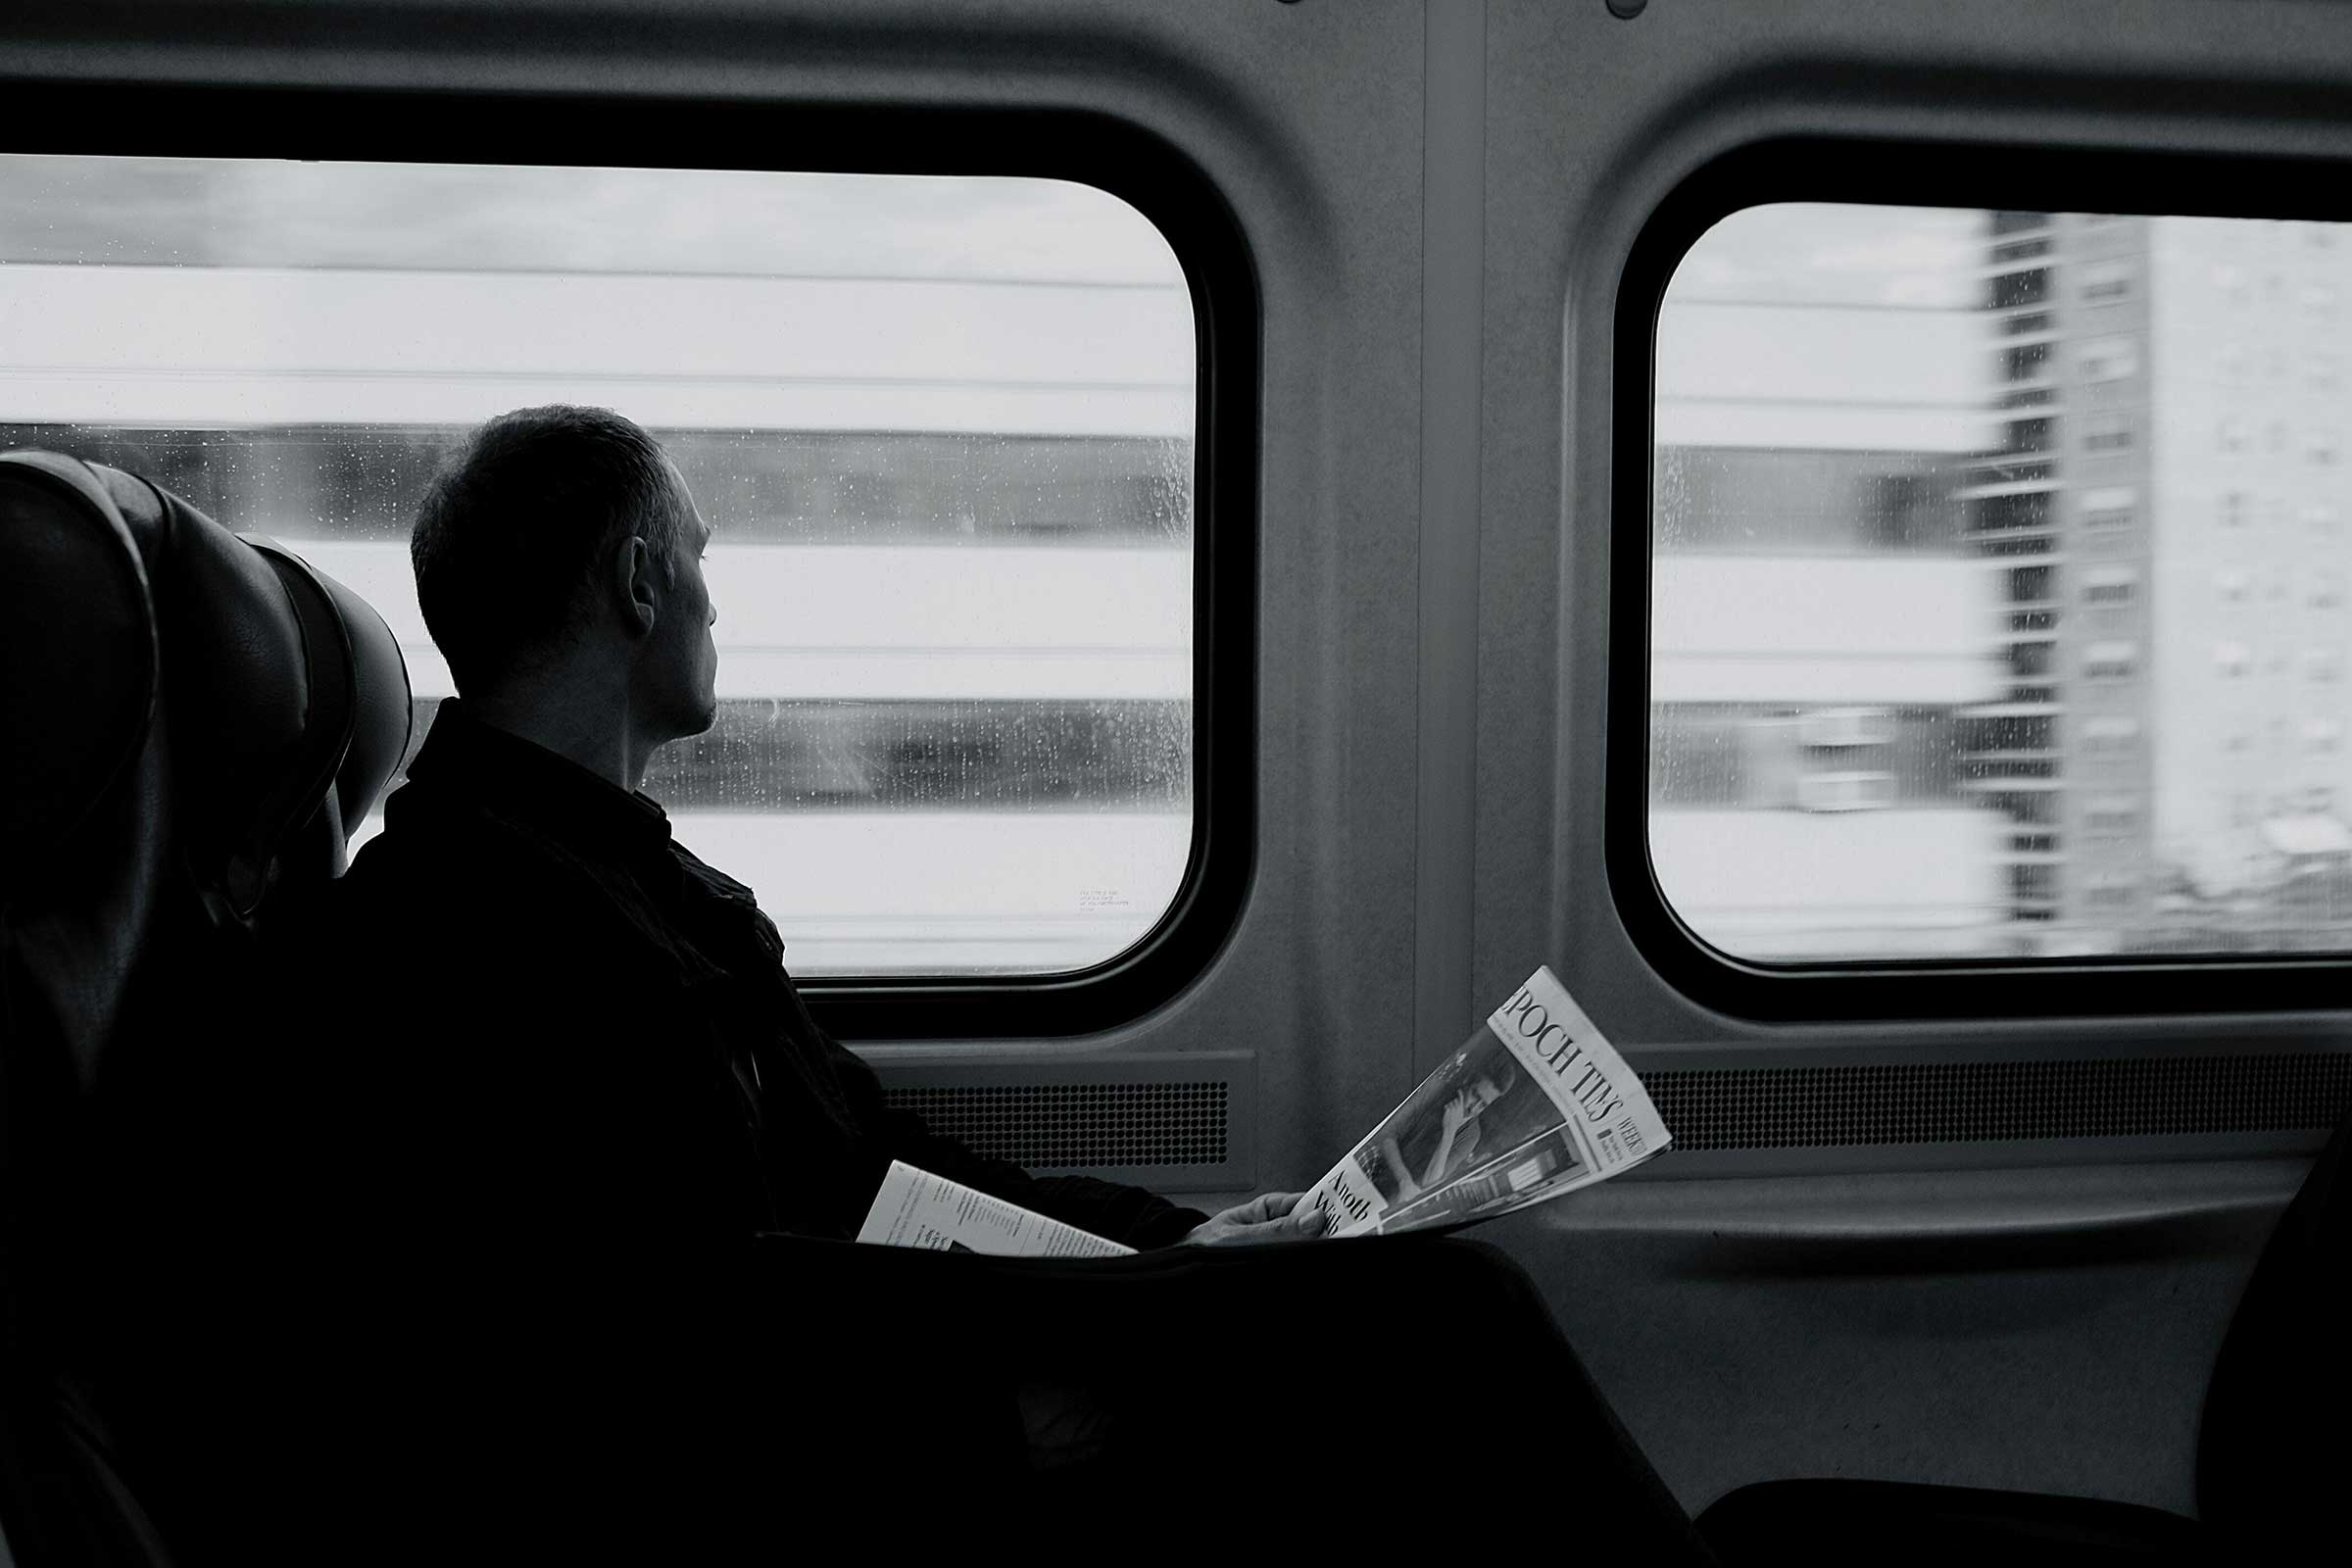 man on a train